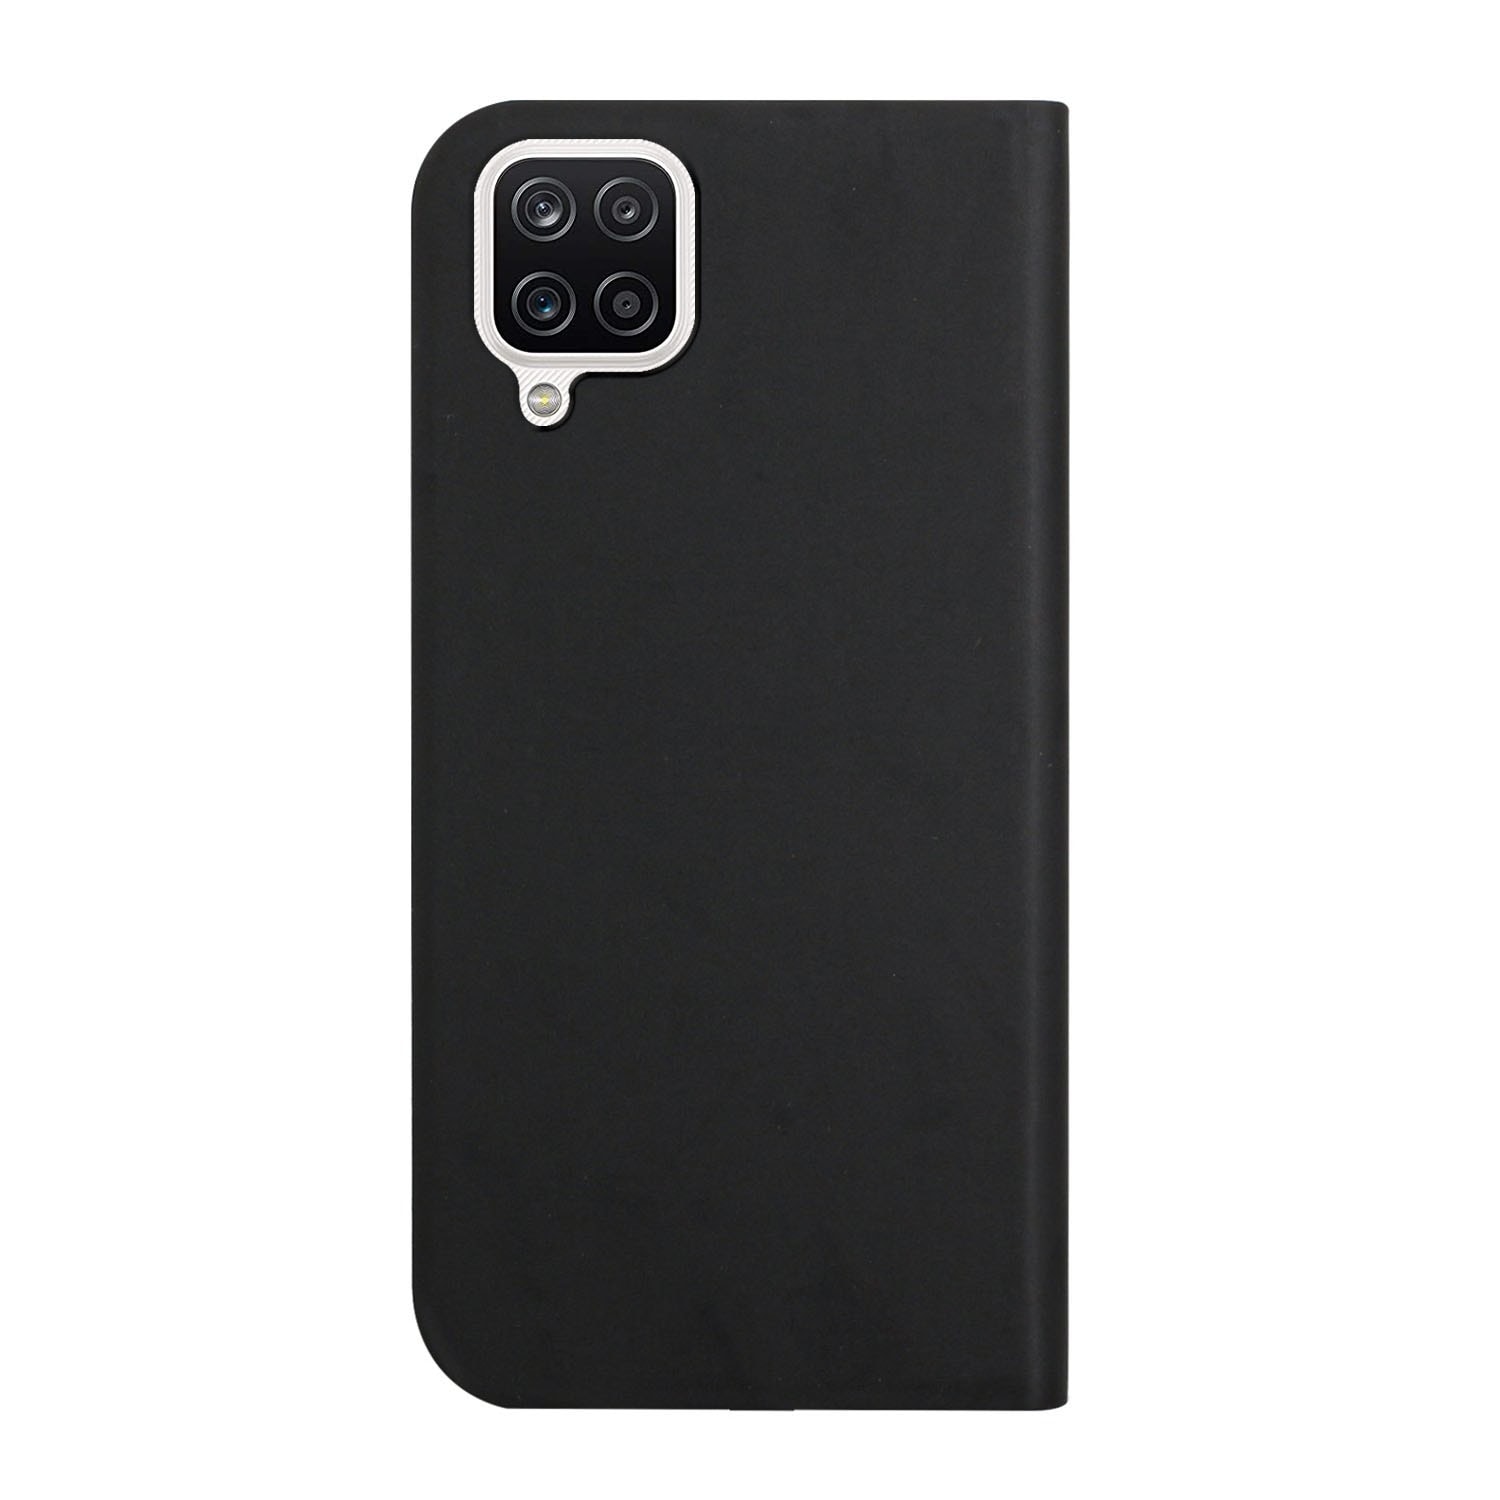 Erittäin ohut matkapuhelimen kuori pidikkeellä Samsung Galaxy A42 5G - Musta